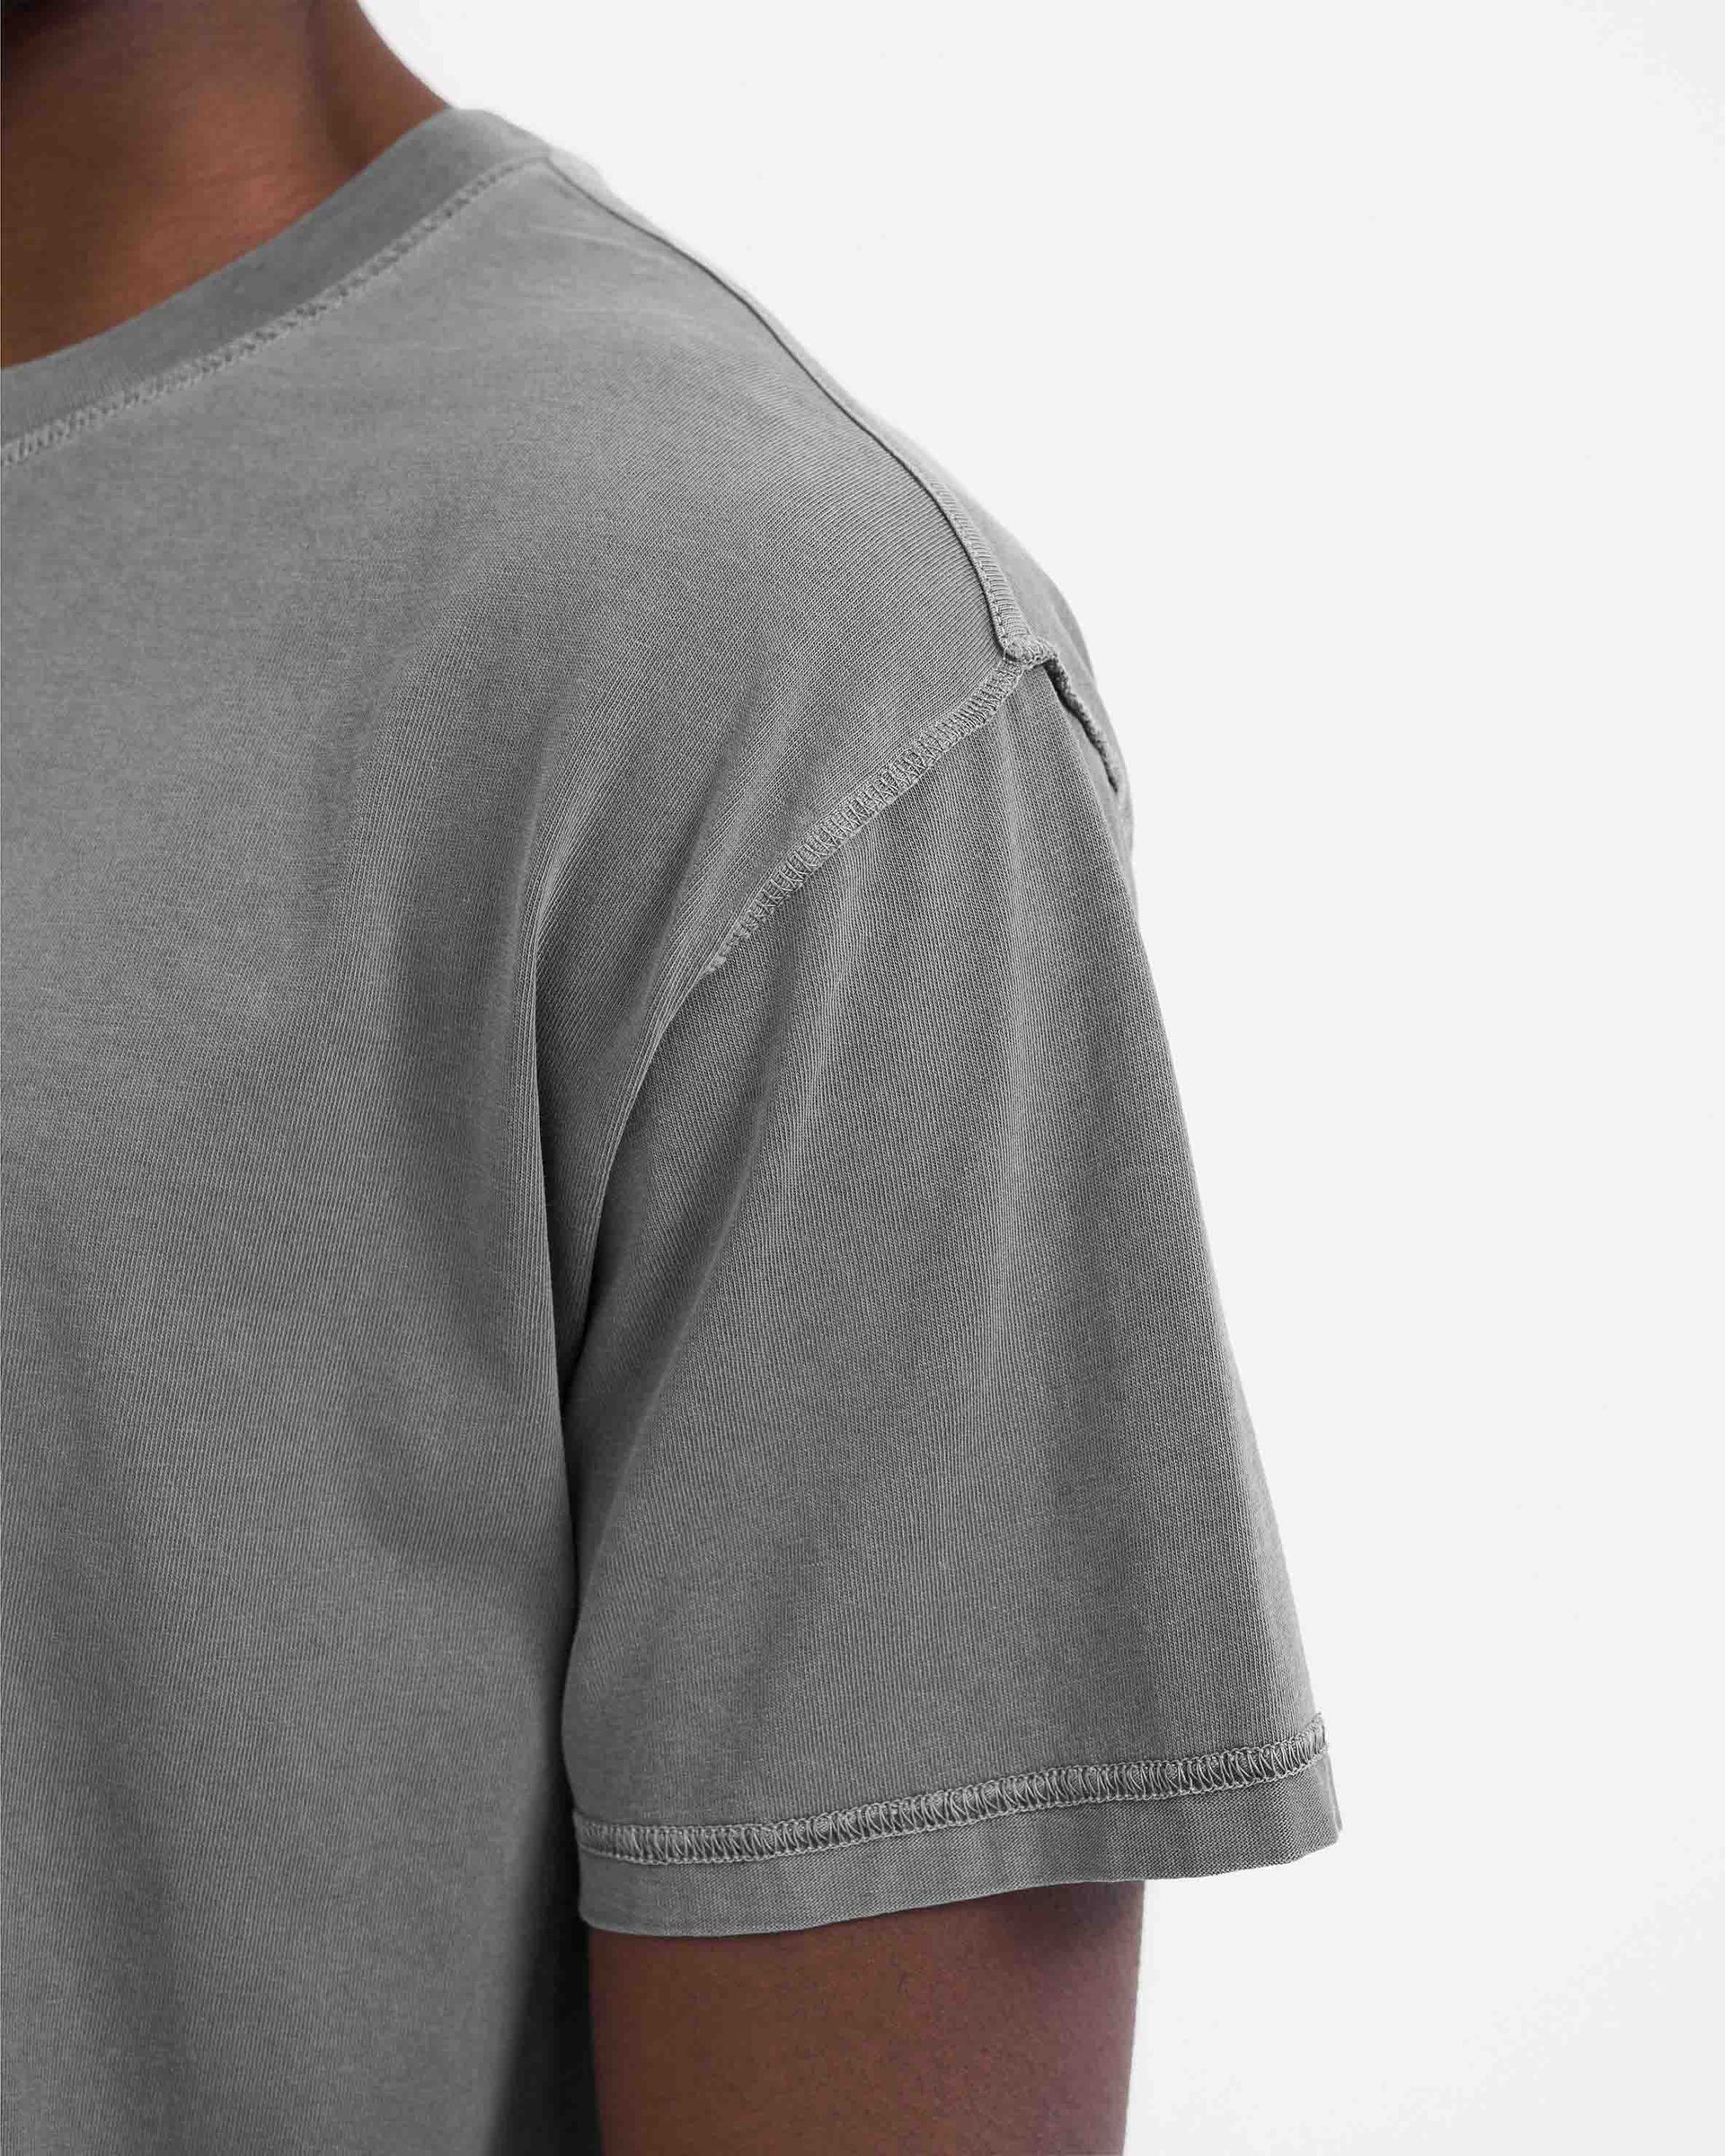 Initial T-Shirt | Grey | REPRESENT CLO